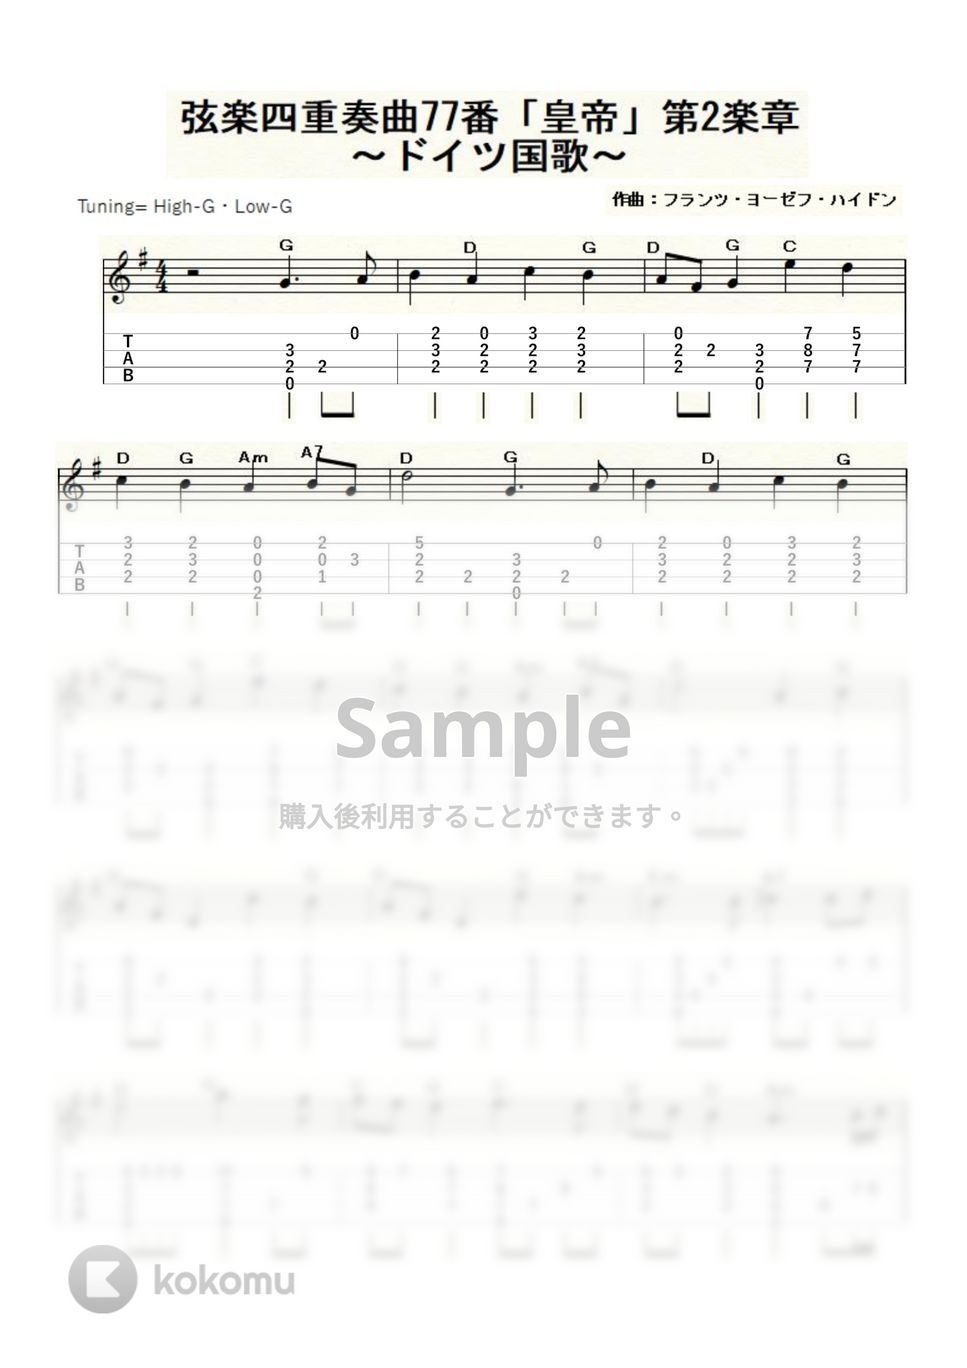 ハイドン - ハイドン弦楽四重奏曲77番「皇帝」第2楽章～ドイツ国歌～ (ｳｸﾚﾚｿﾛ / High-G・Low-G / 中級) by ukulelepapa